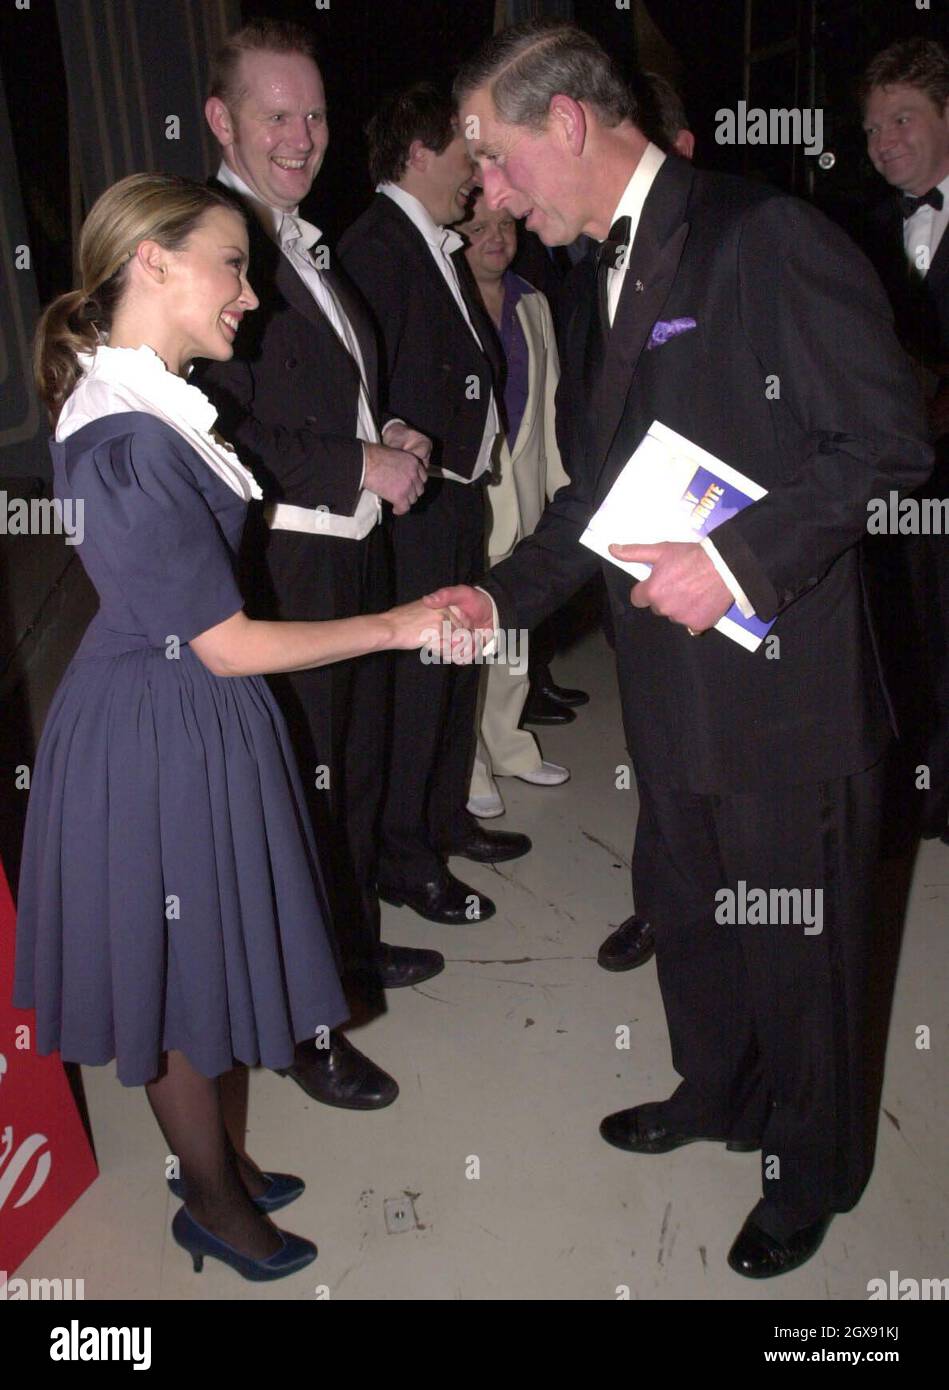 Il Principe di Galles incontra Kylie Minogue, ospite a sorpresa al Wyndham Theatre di Londra per una performance Royal Gala "Princes Trust" di "The Play What i wrote" diretta da Kenneth Branagh. A tutta lunghezza, abito blu, frill bianco, cantante, moda, shake a mano. Foto Stock